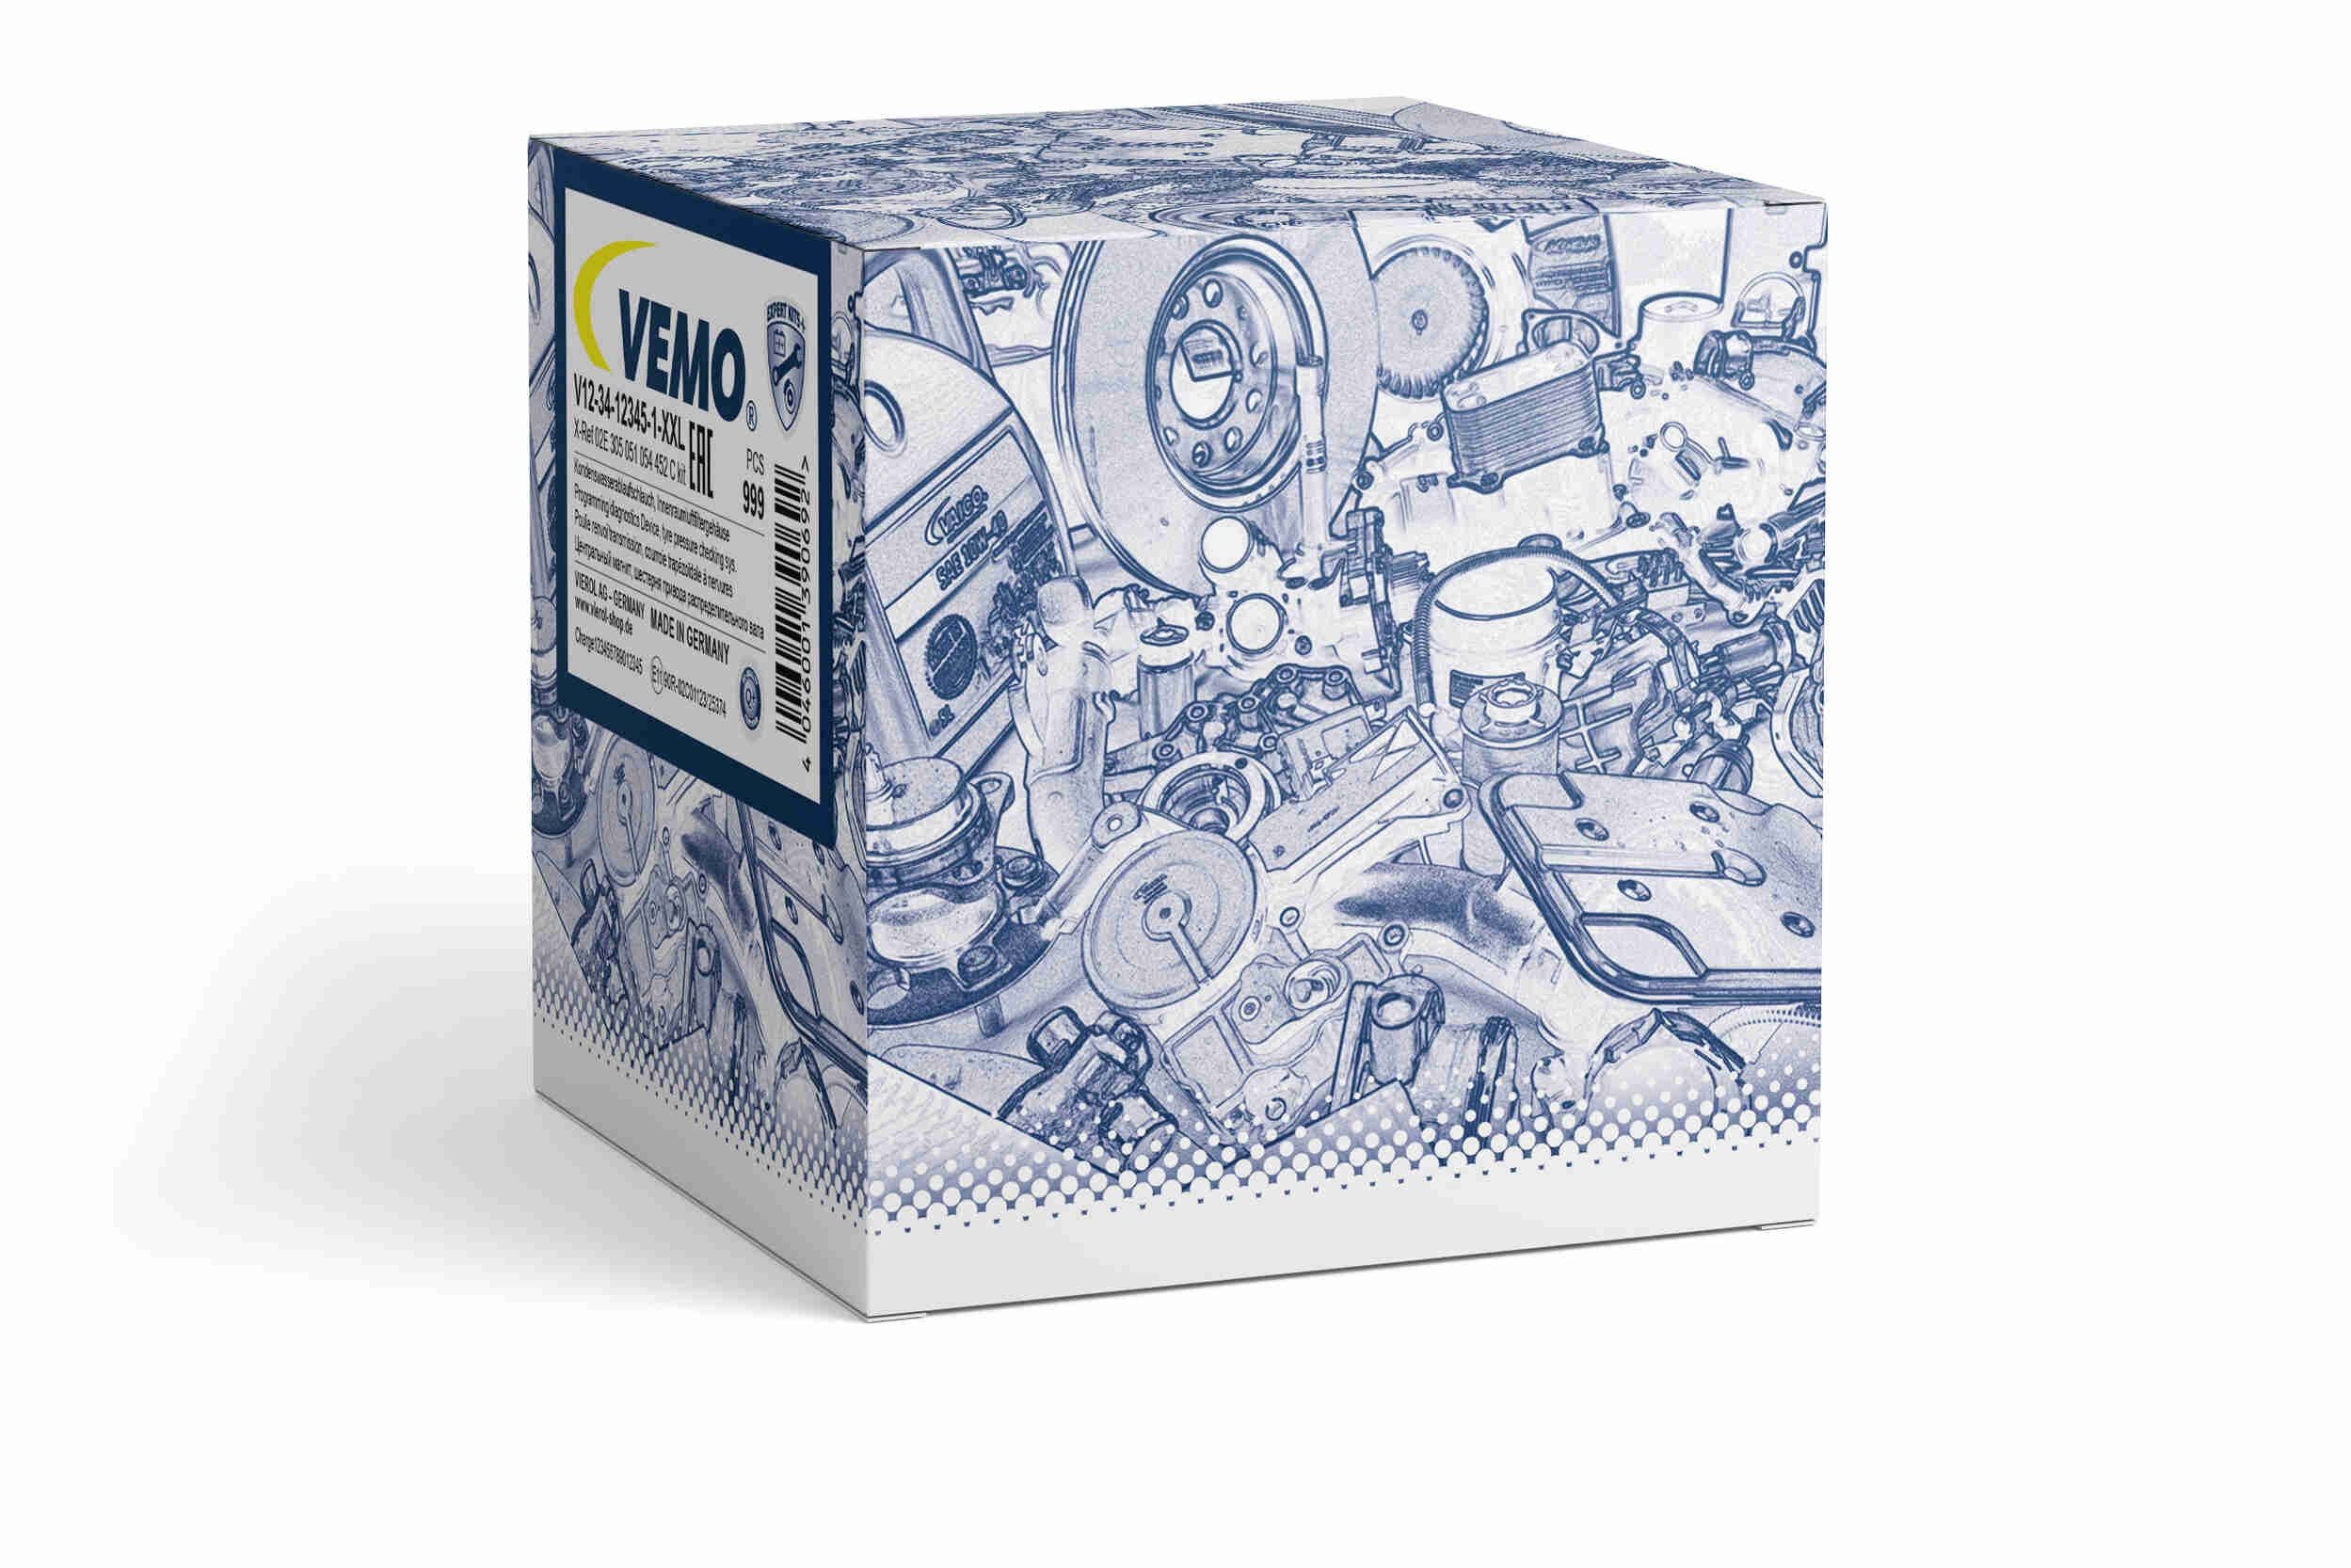 VEMO V46-72-0199 Sensor, exhaust pressure Q+, original equipment manufacturer quality